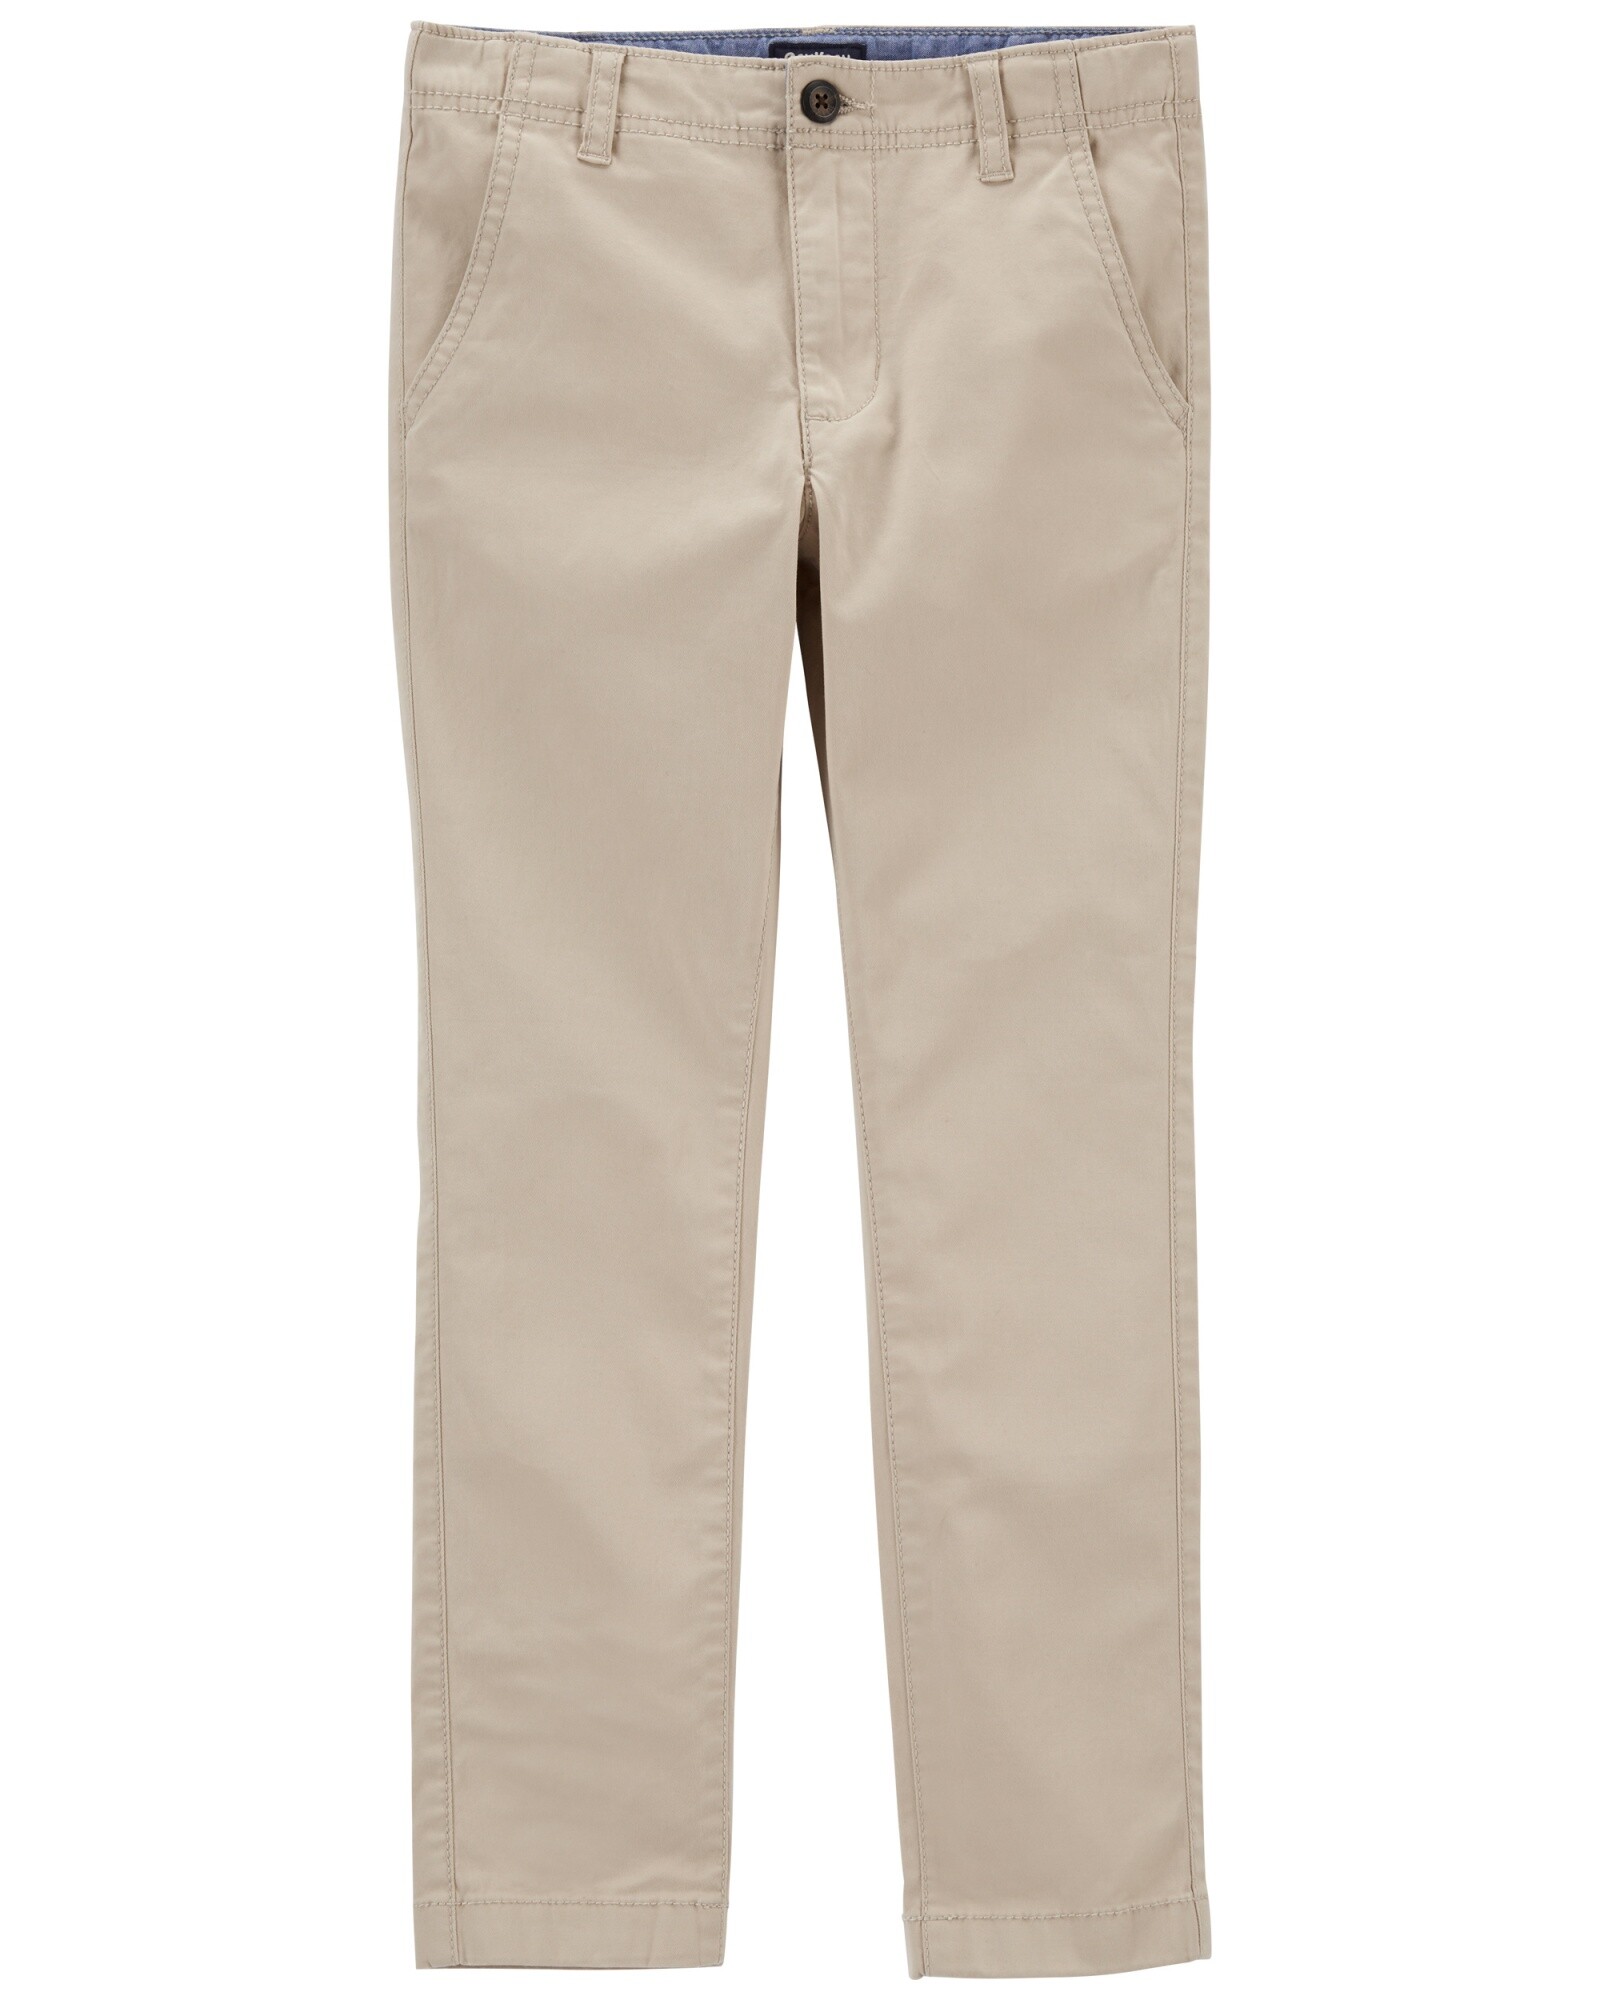 Pantalón de sarga clásico. Talles 6-14 Sin color